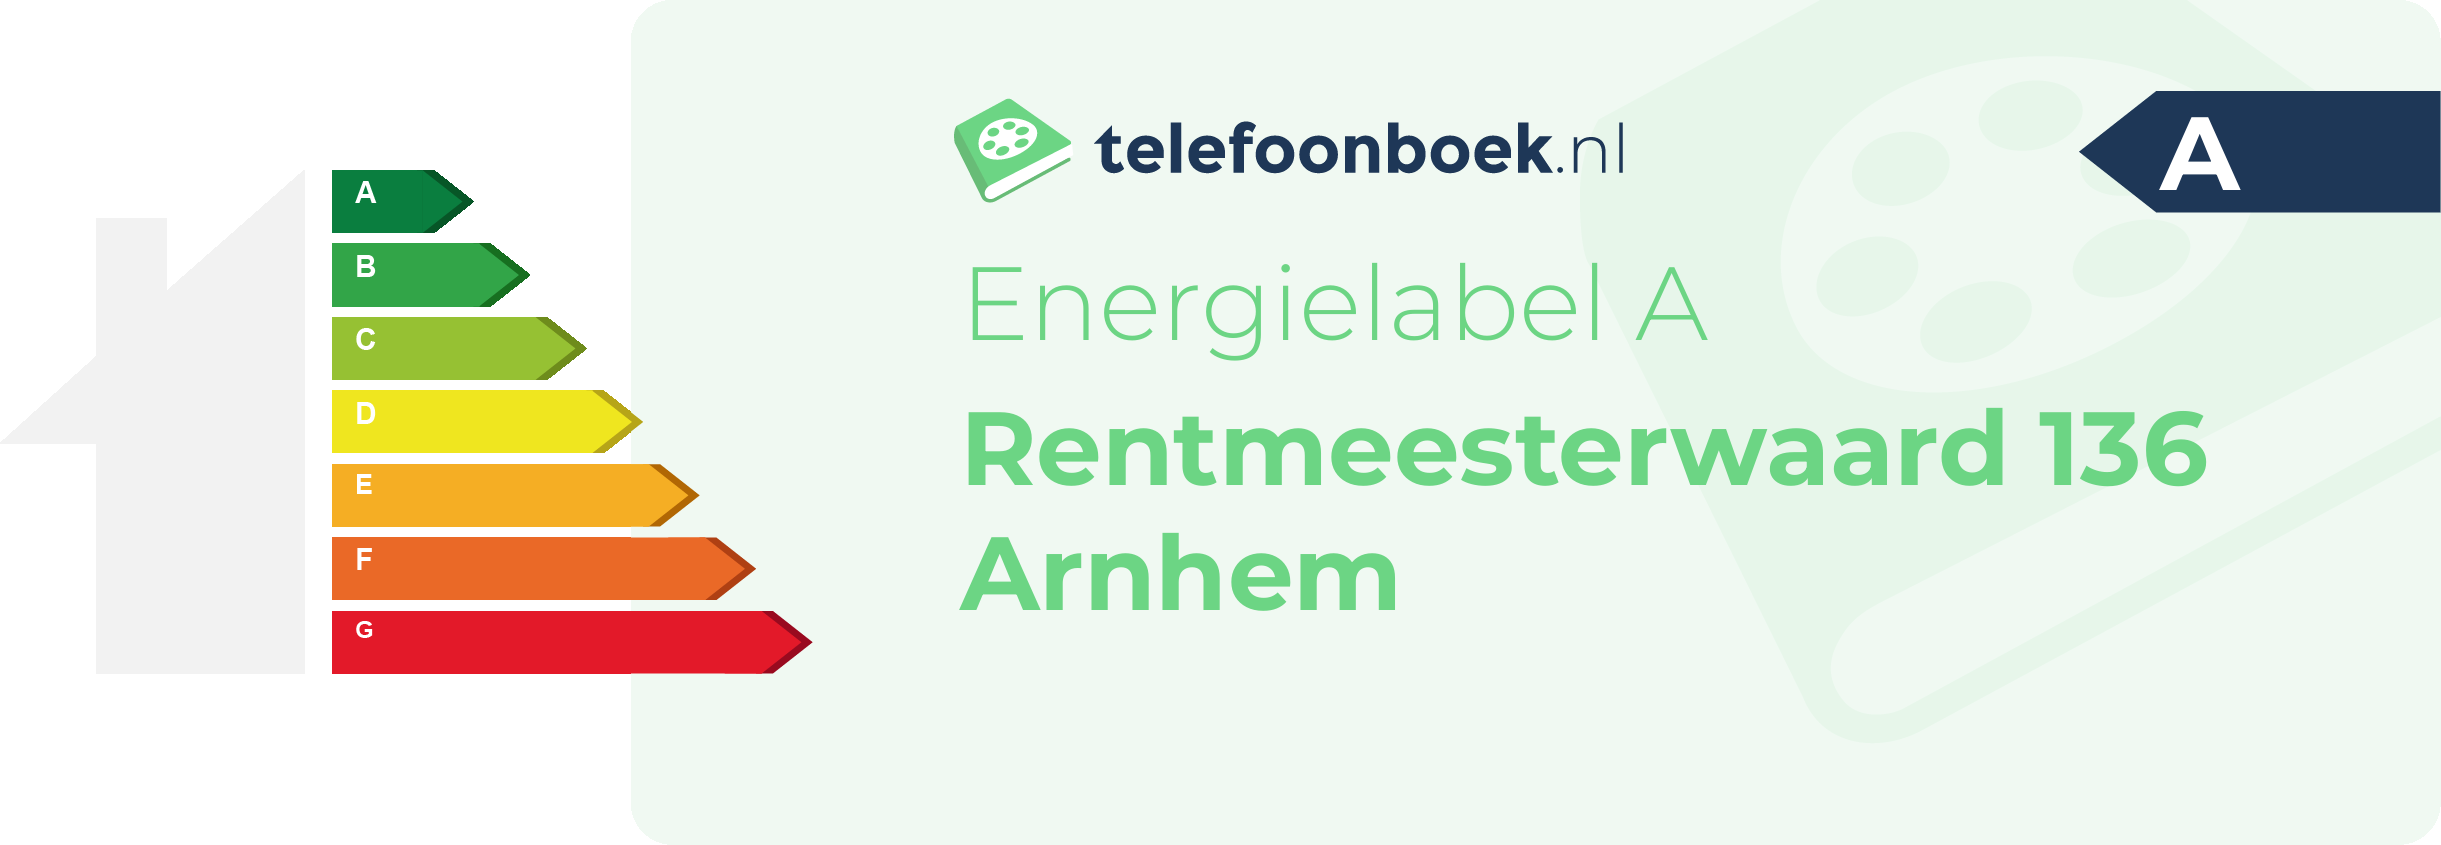 Energielabel Rentmeesterwaard 136 Arnhem